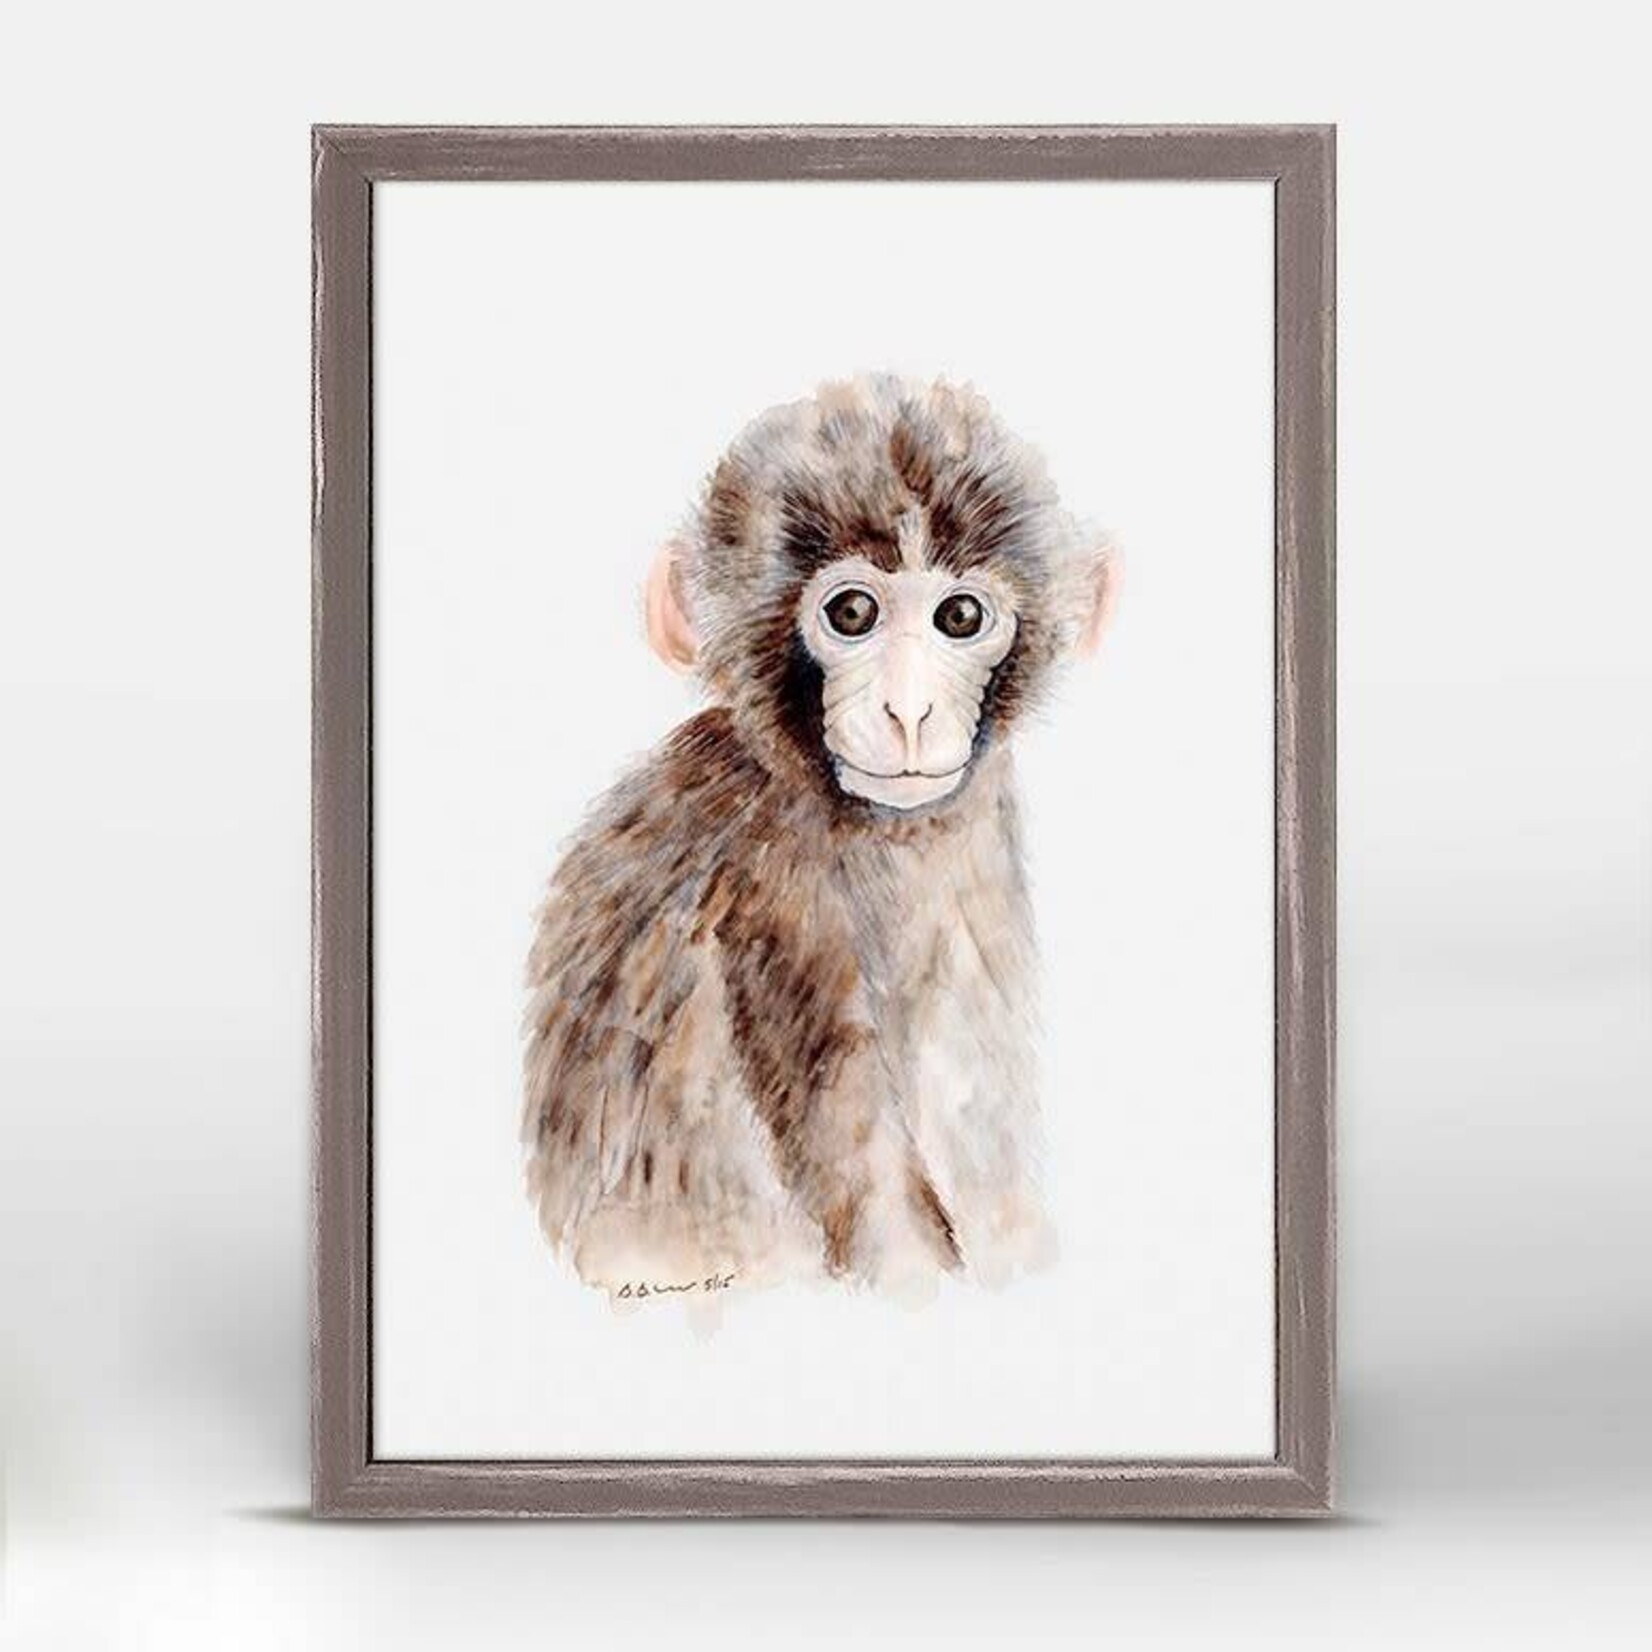 Greenbox Art 5x7 Mini Framed Canvas Baby Monkey